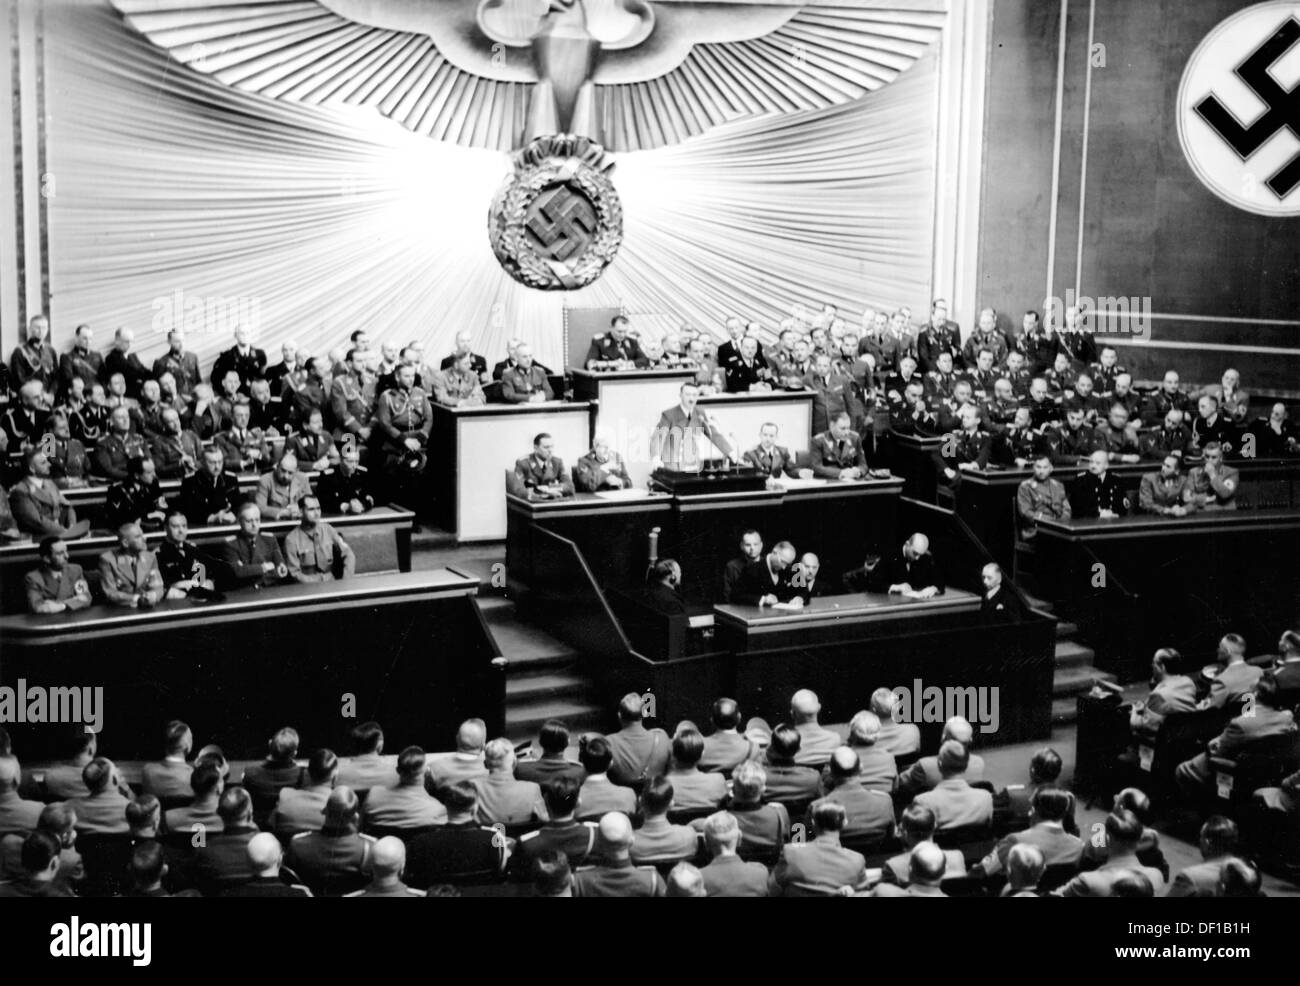 L'image de la propagande nazie! Spectacles le chancelier Adolf Hitler prononcera un discours au Reichstag dans l'Opéra de Kroll à Berlin, Allemagne, le 6 octobre 1939. Fotoarchiv für Zeitgeschichte Banque D'Images